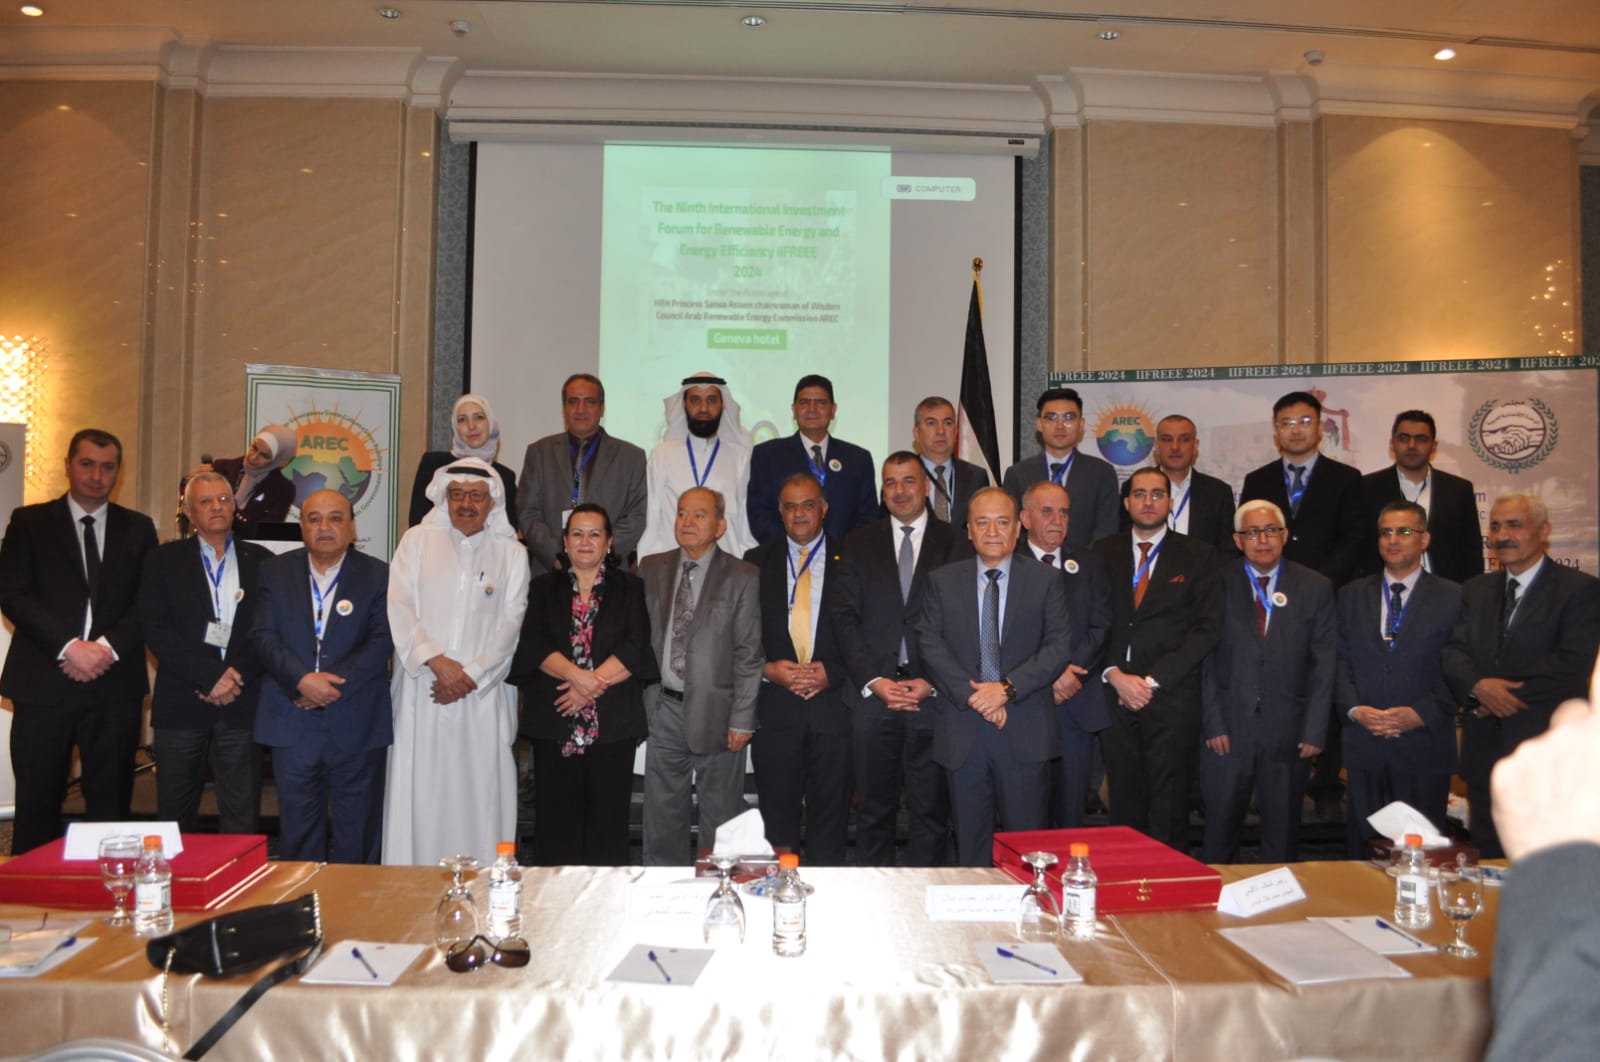 منتدى الاستثمار للطاقة يطلق إعلان عمان للسلام والتنمية المستدامة